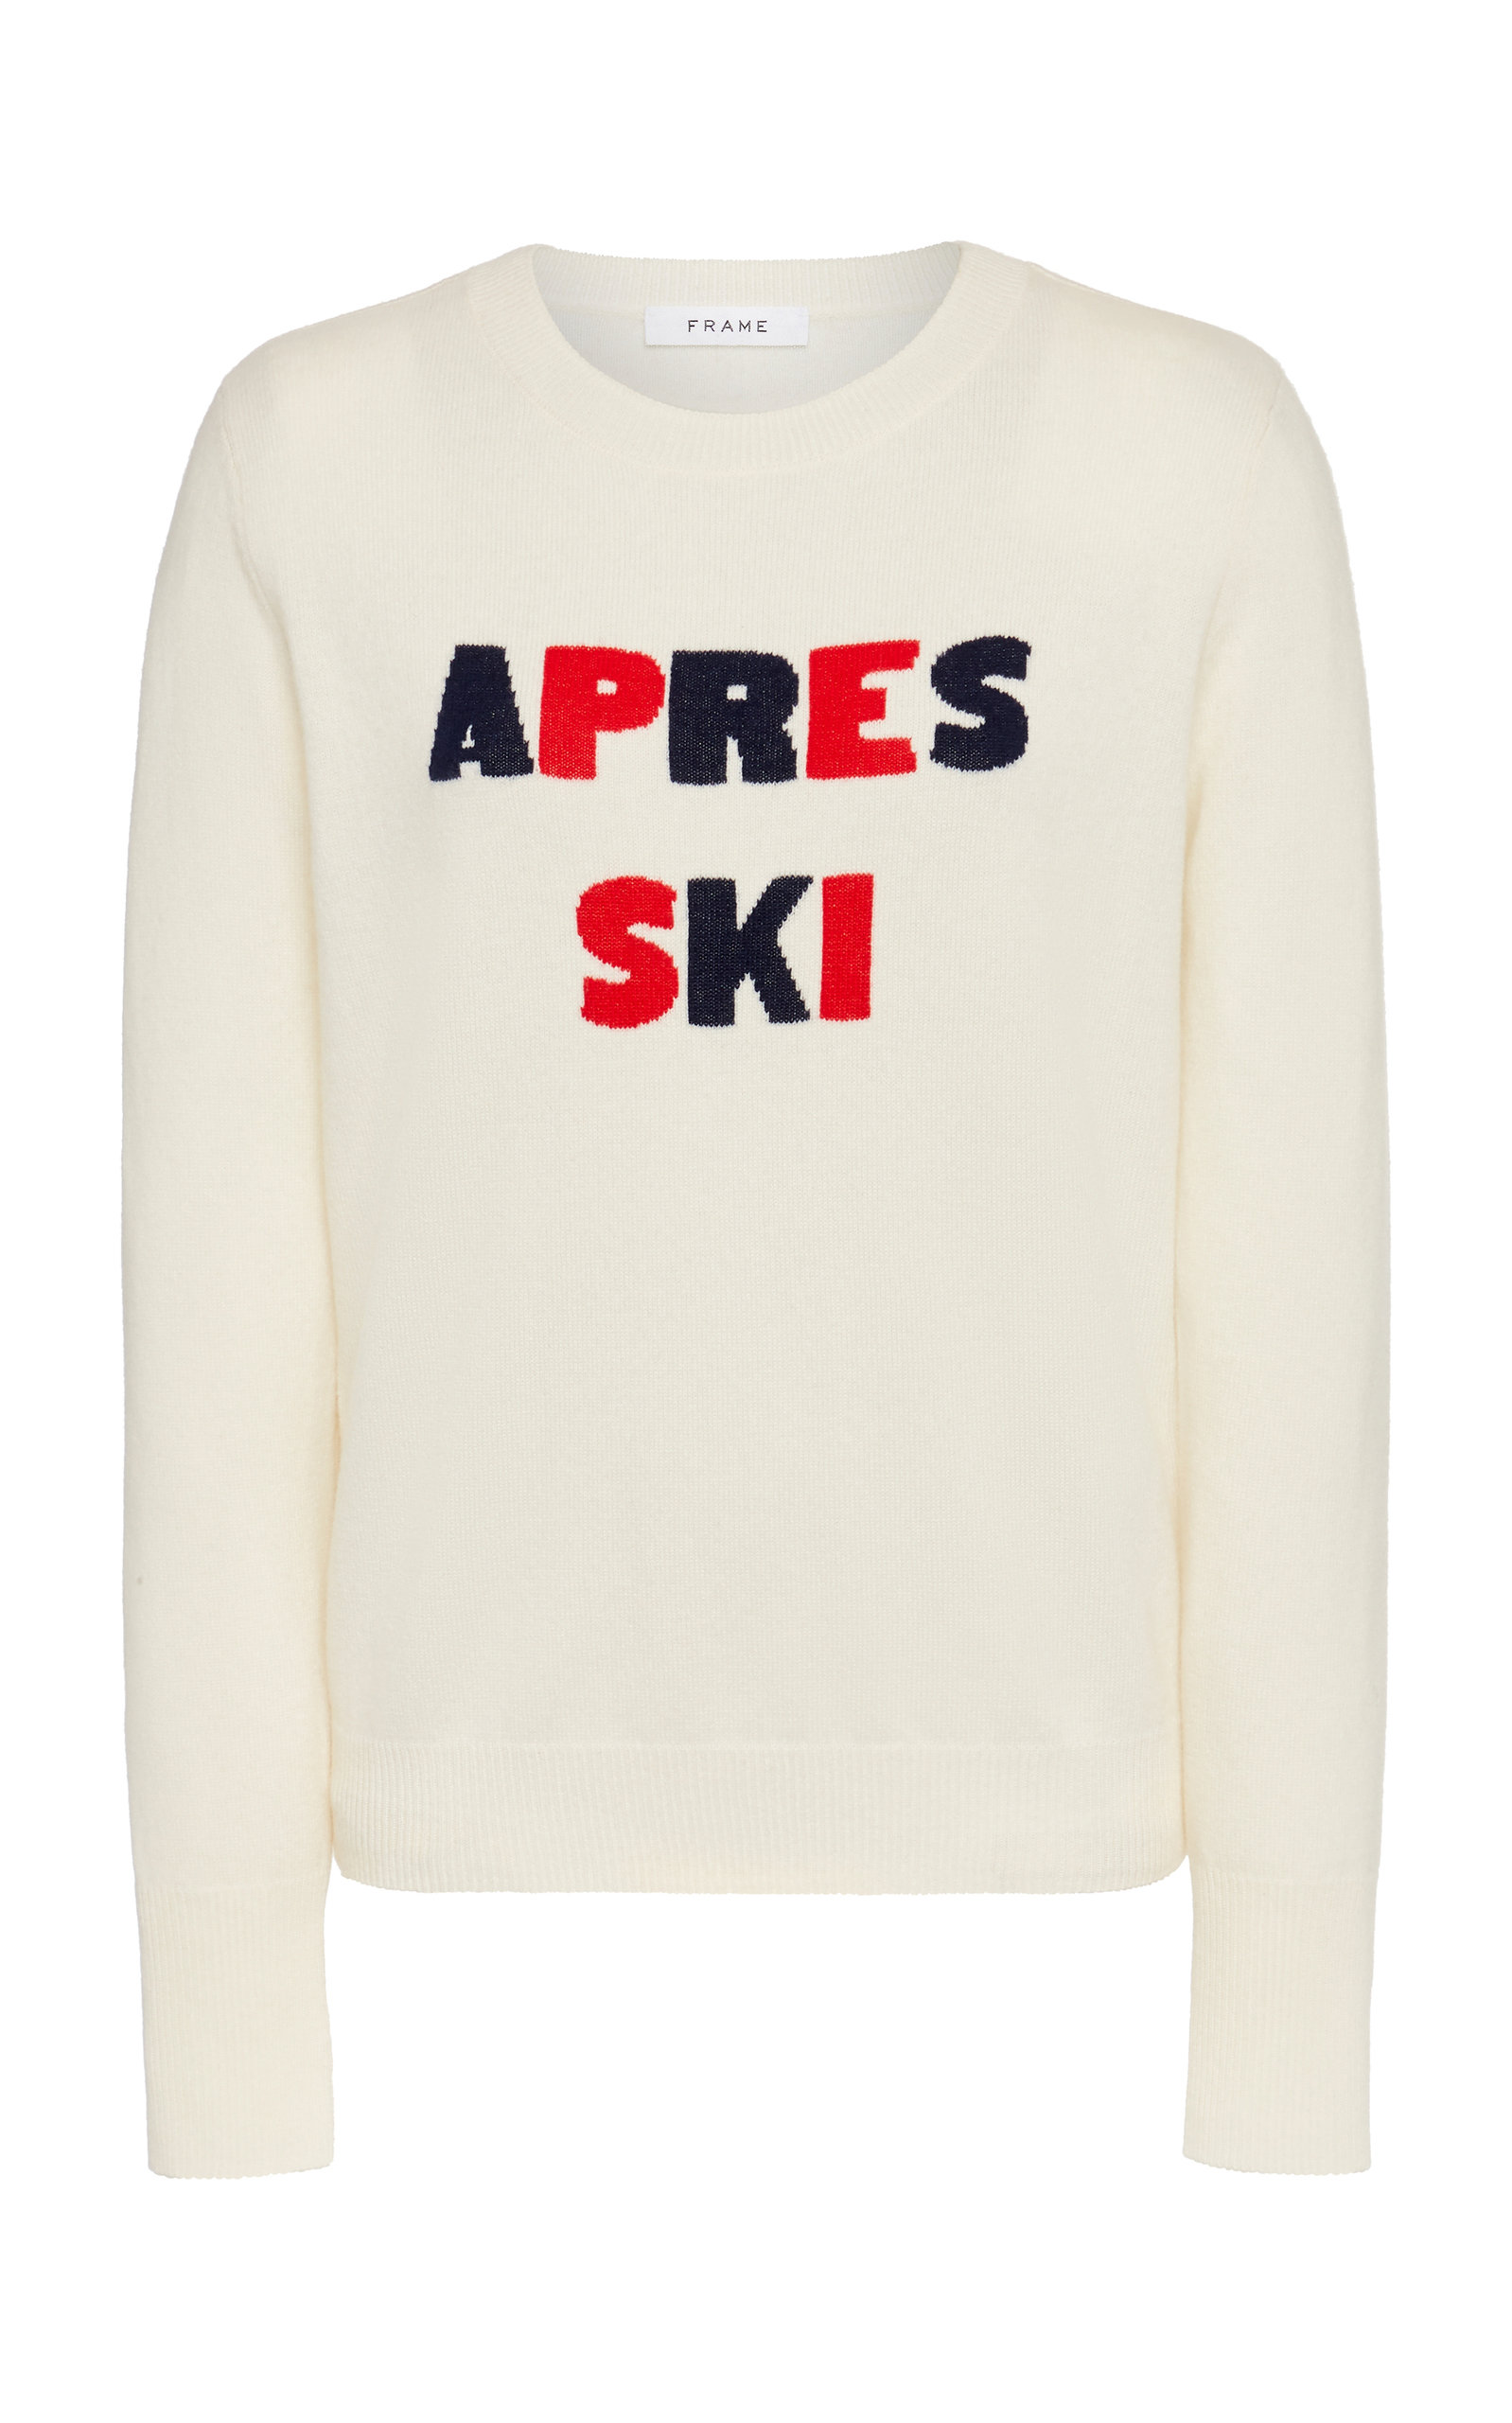 apres ski sweater